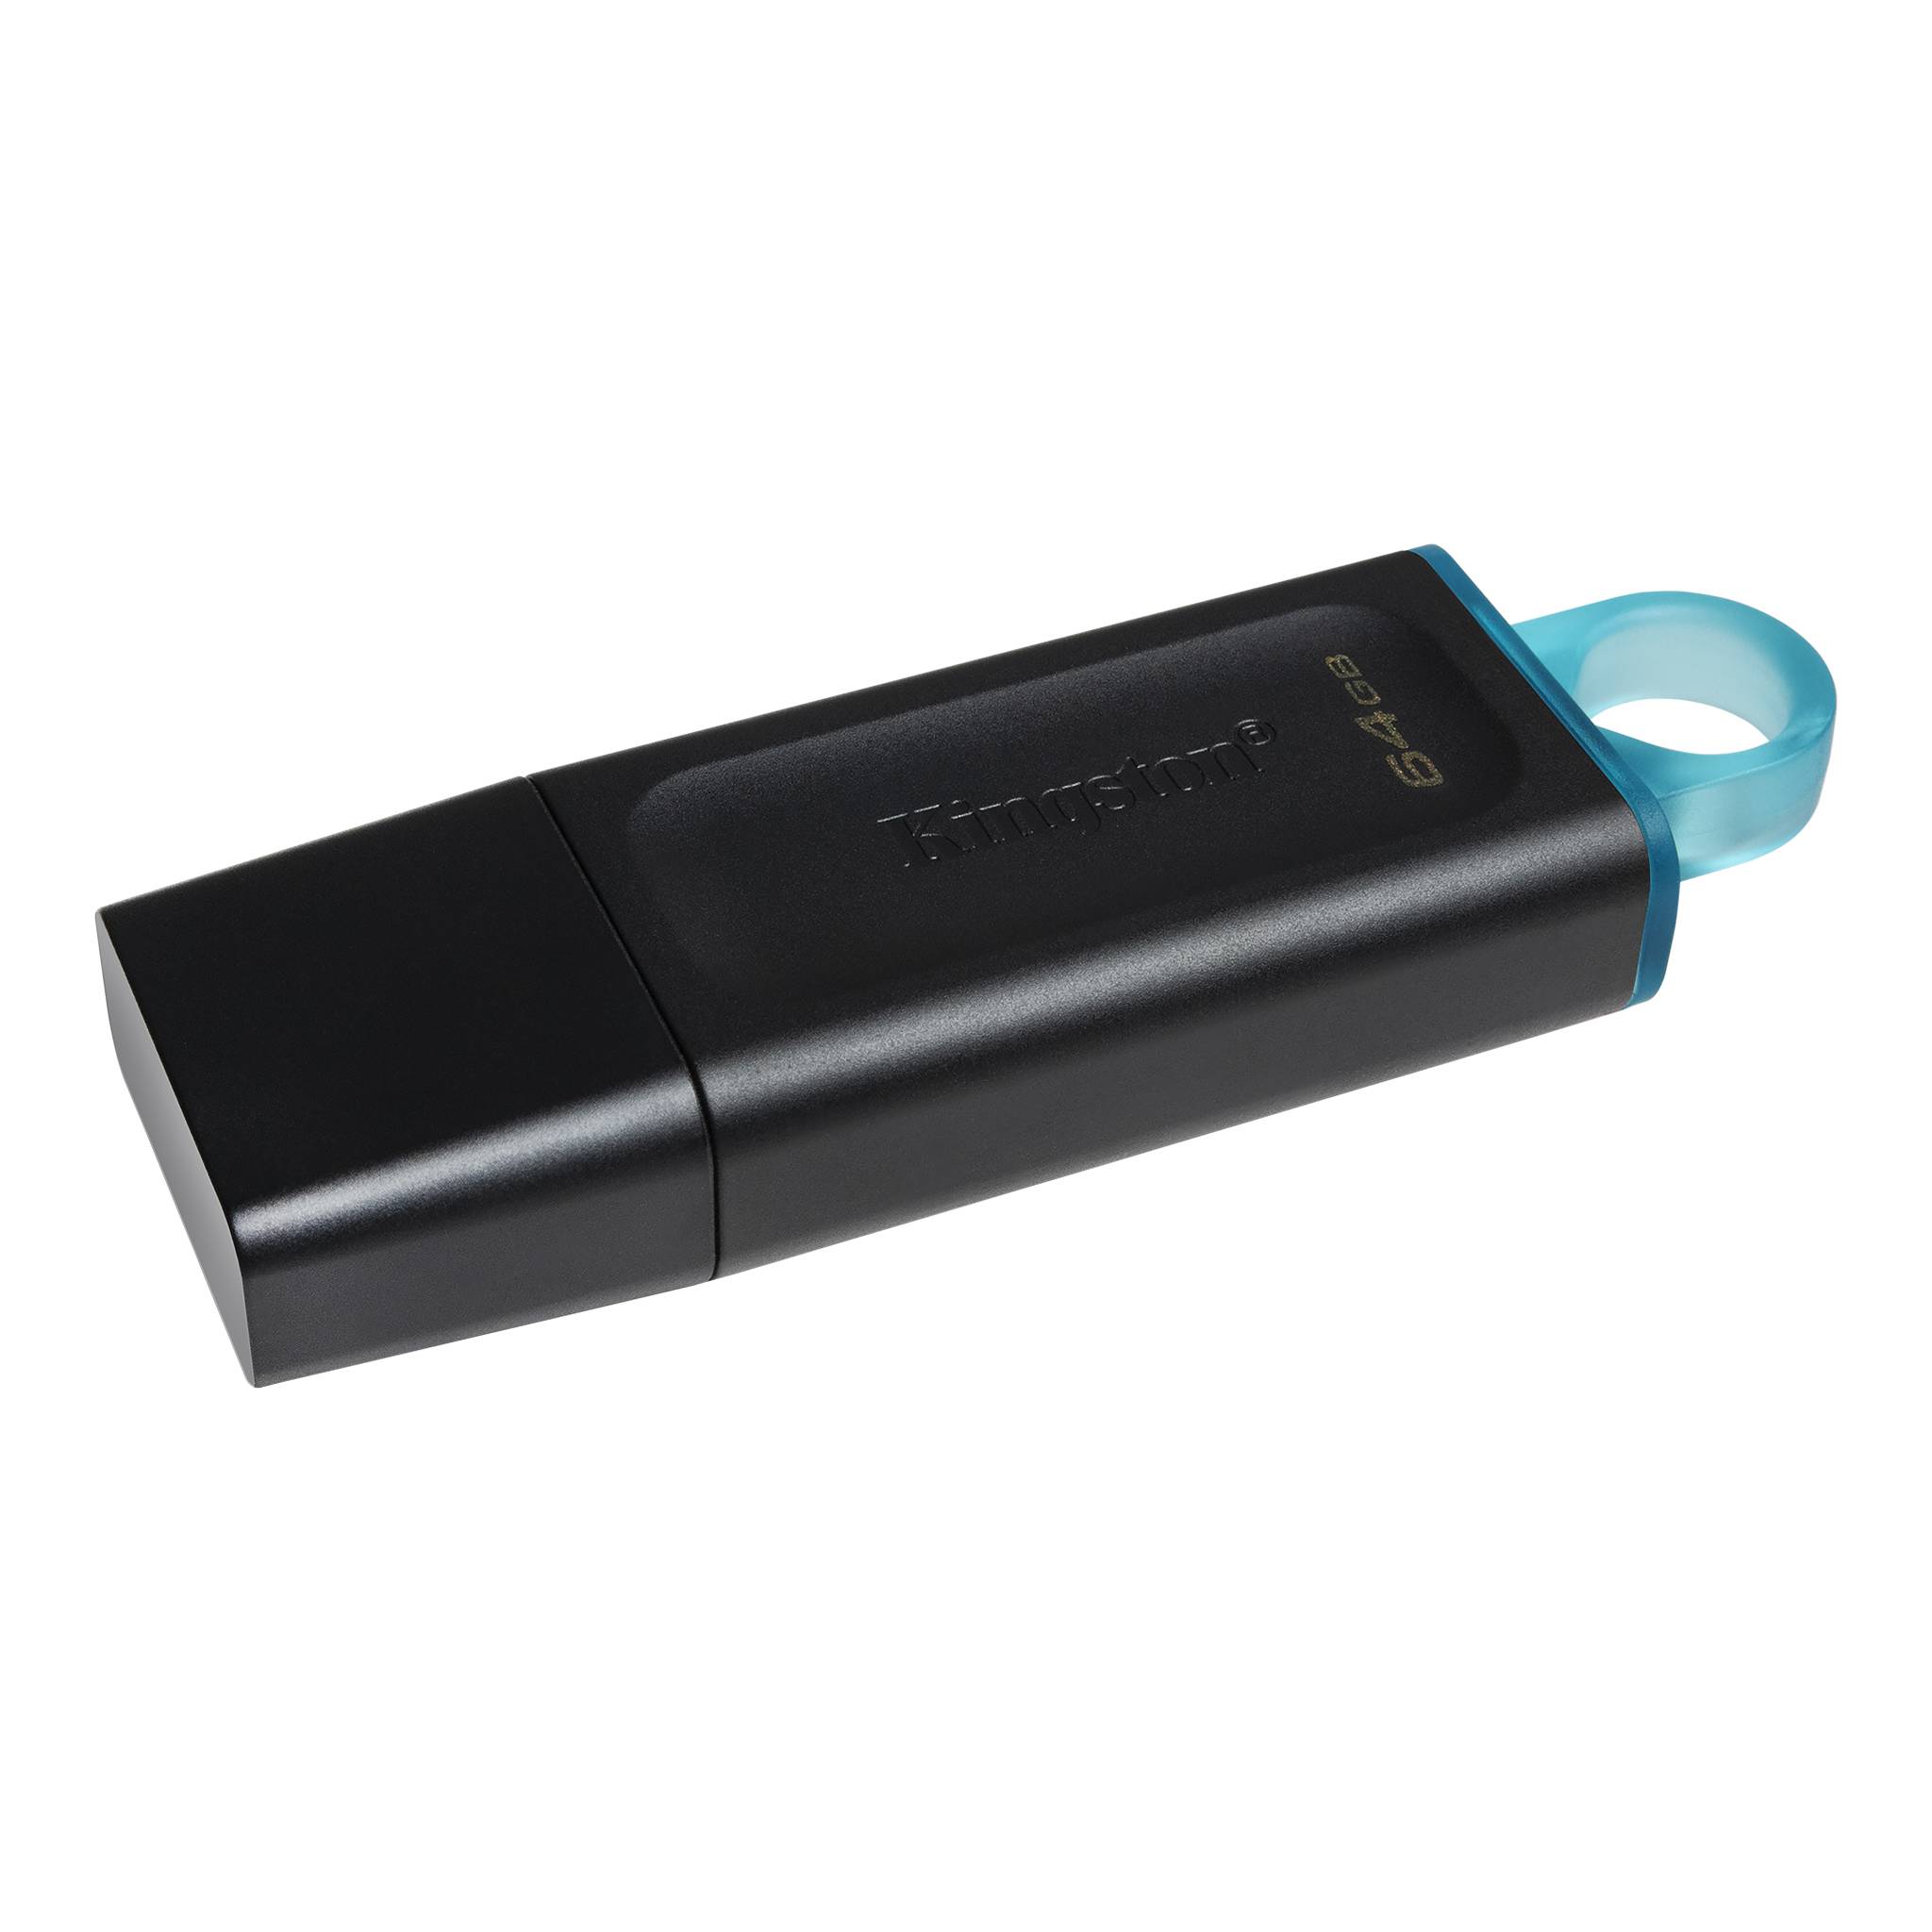 USB Kingston 64GB DataTraveler Exodia(DTX/64GB) - Hàng chính hãng